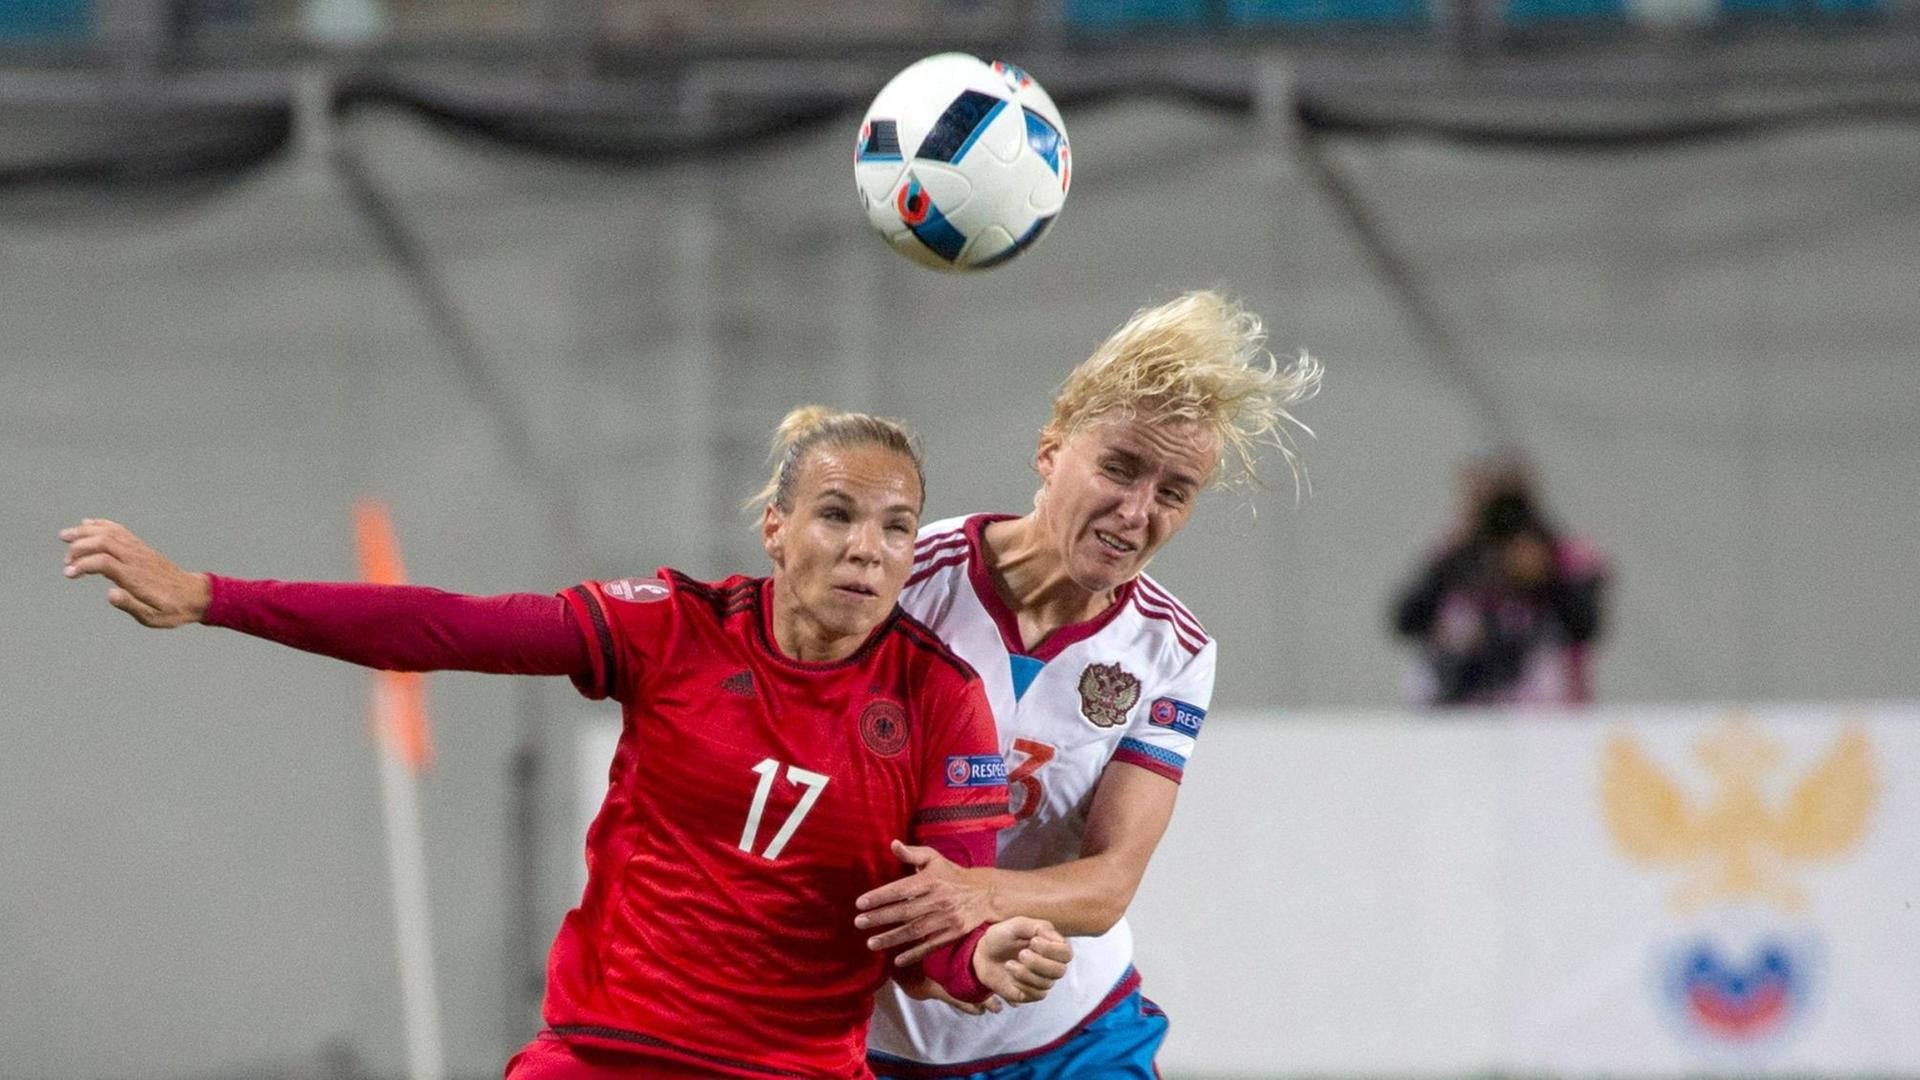 Die Fußballerinnen Isabel Kerschowski und Elena Morozova springen nach dem Ball